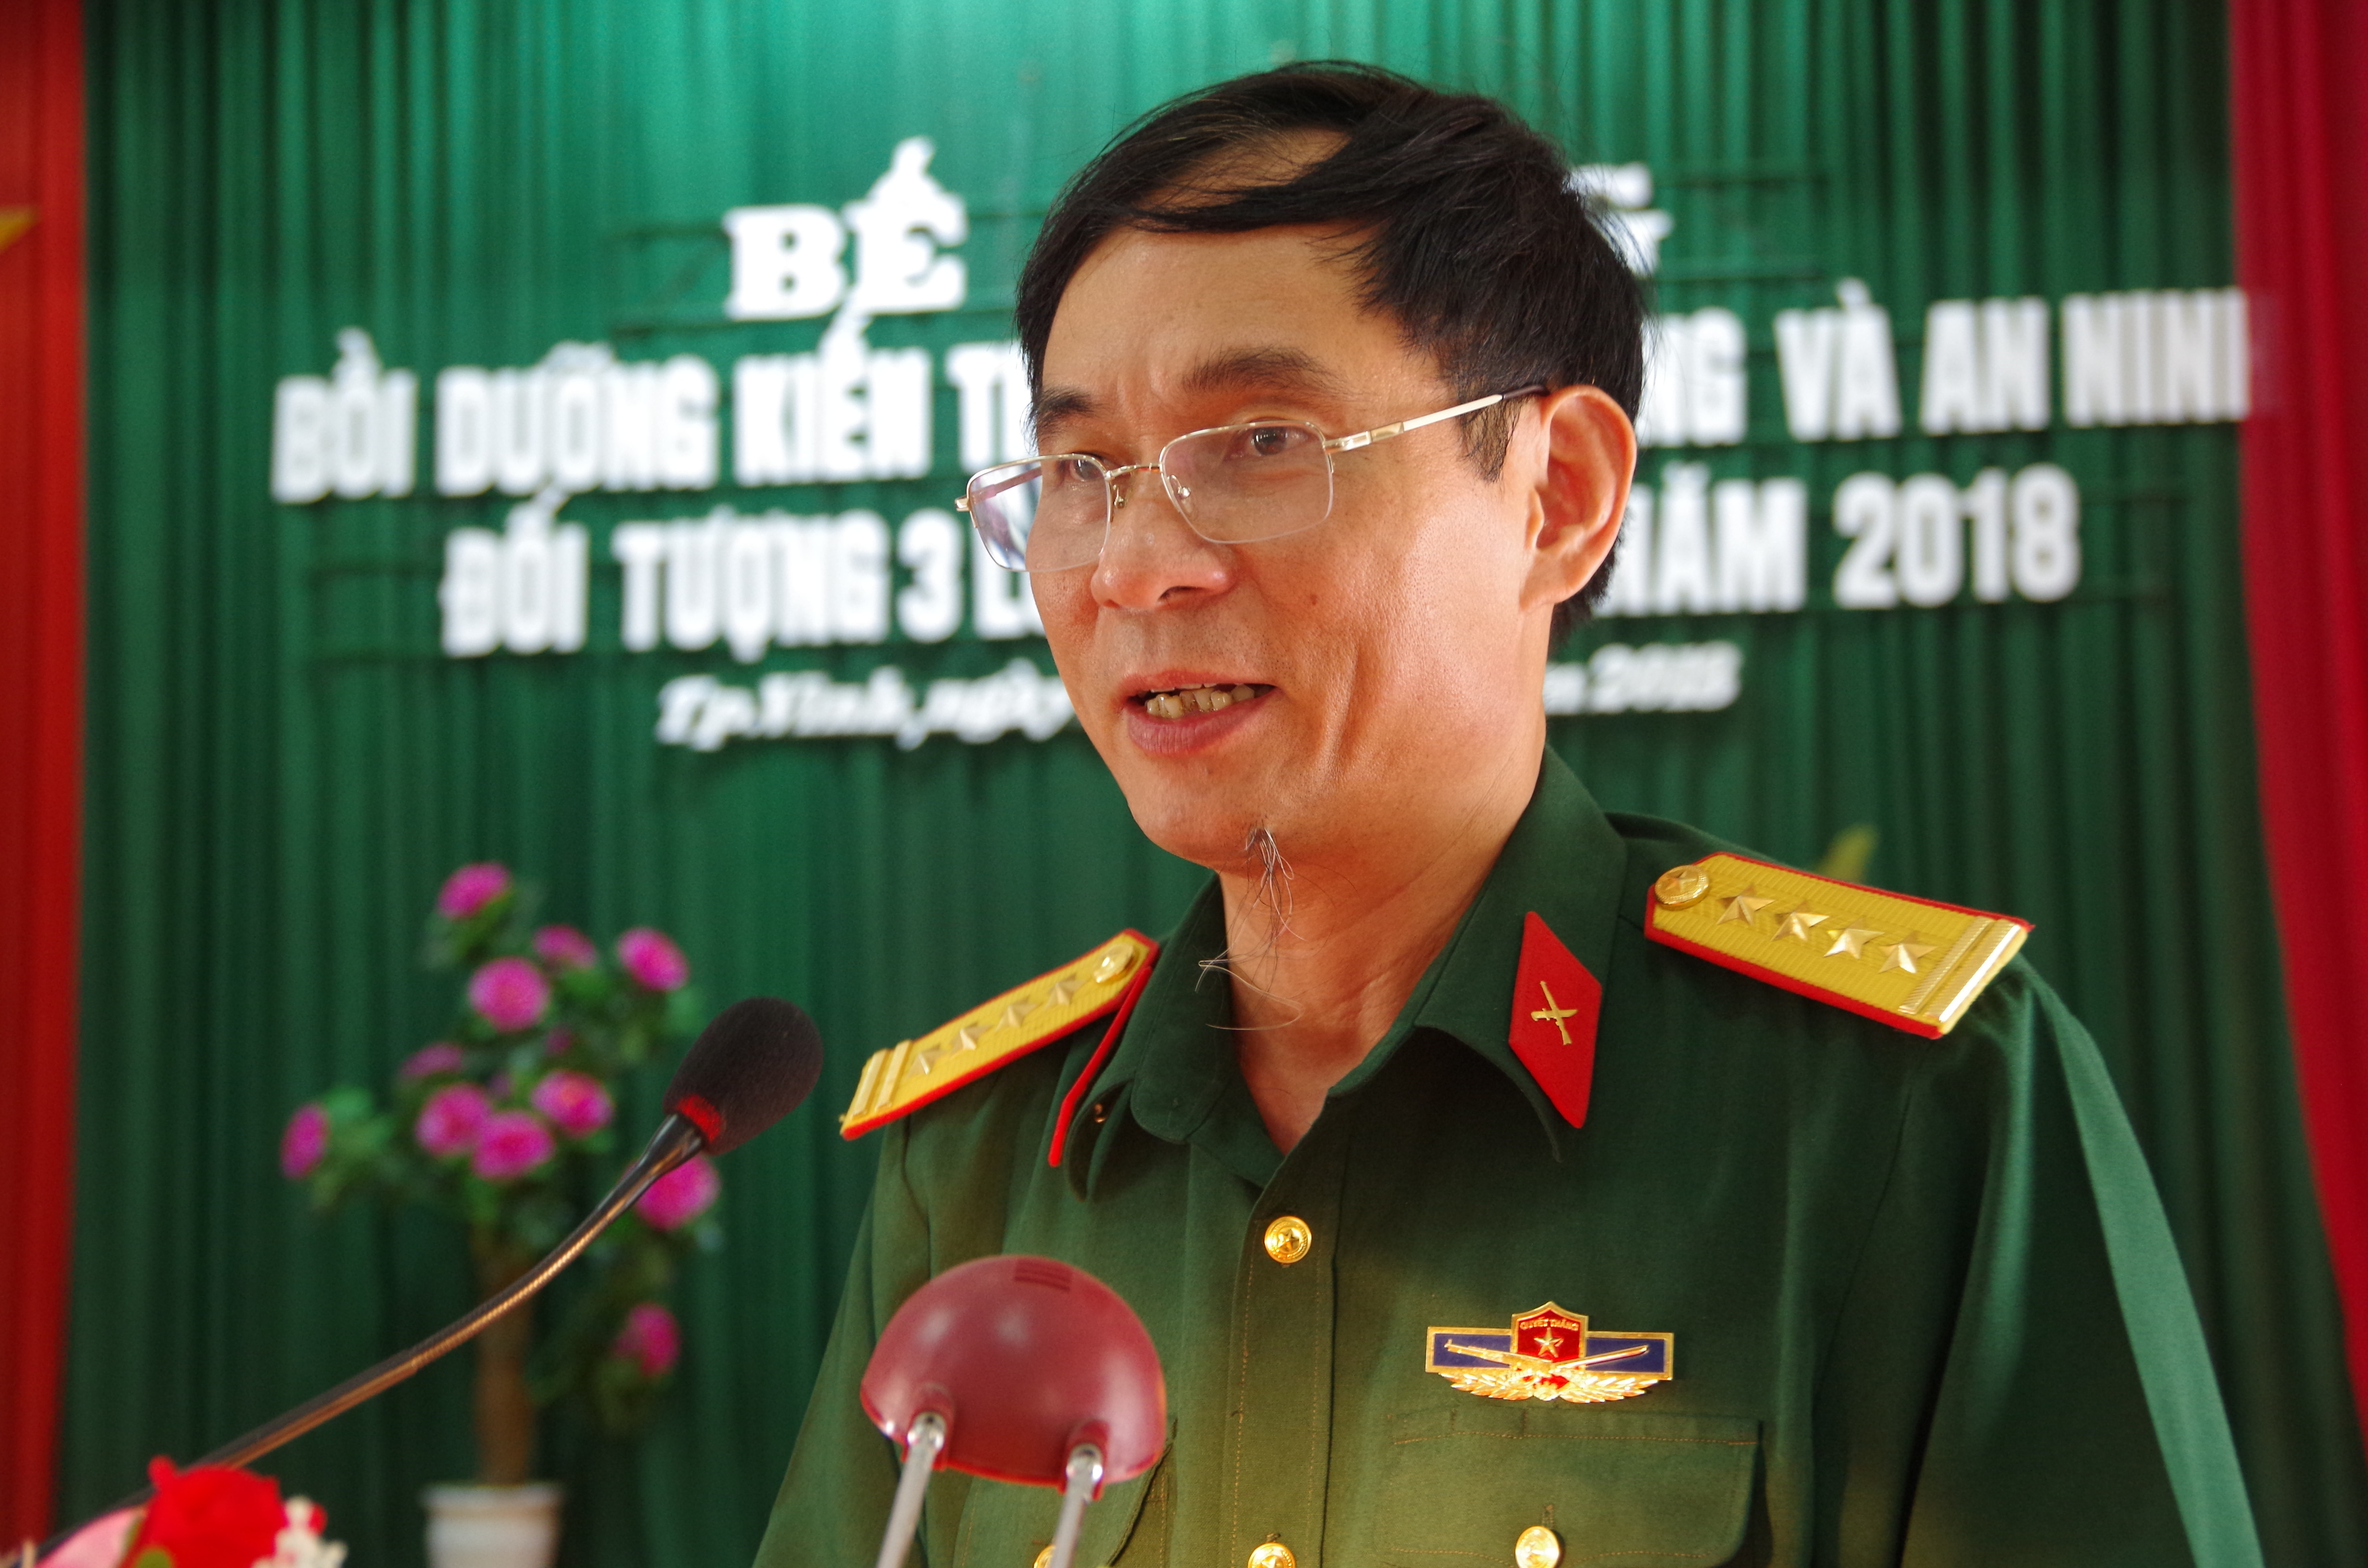 Tới dự lễ bế mạc có Đại tá Trần Văn Hùng - Ủy viên BTV Tỉnh ủy, Chỉ huy trưởng Bộ CHQS tỉnh. Ảnh: Hoàng Long